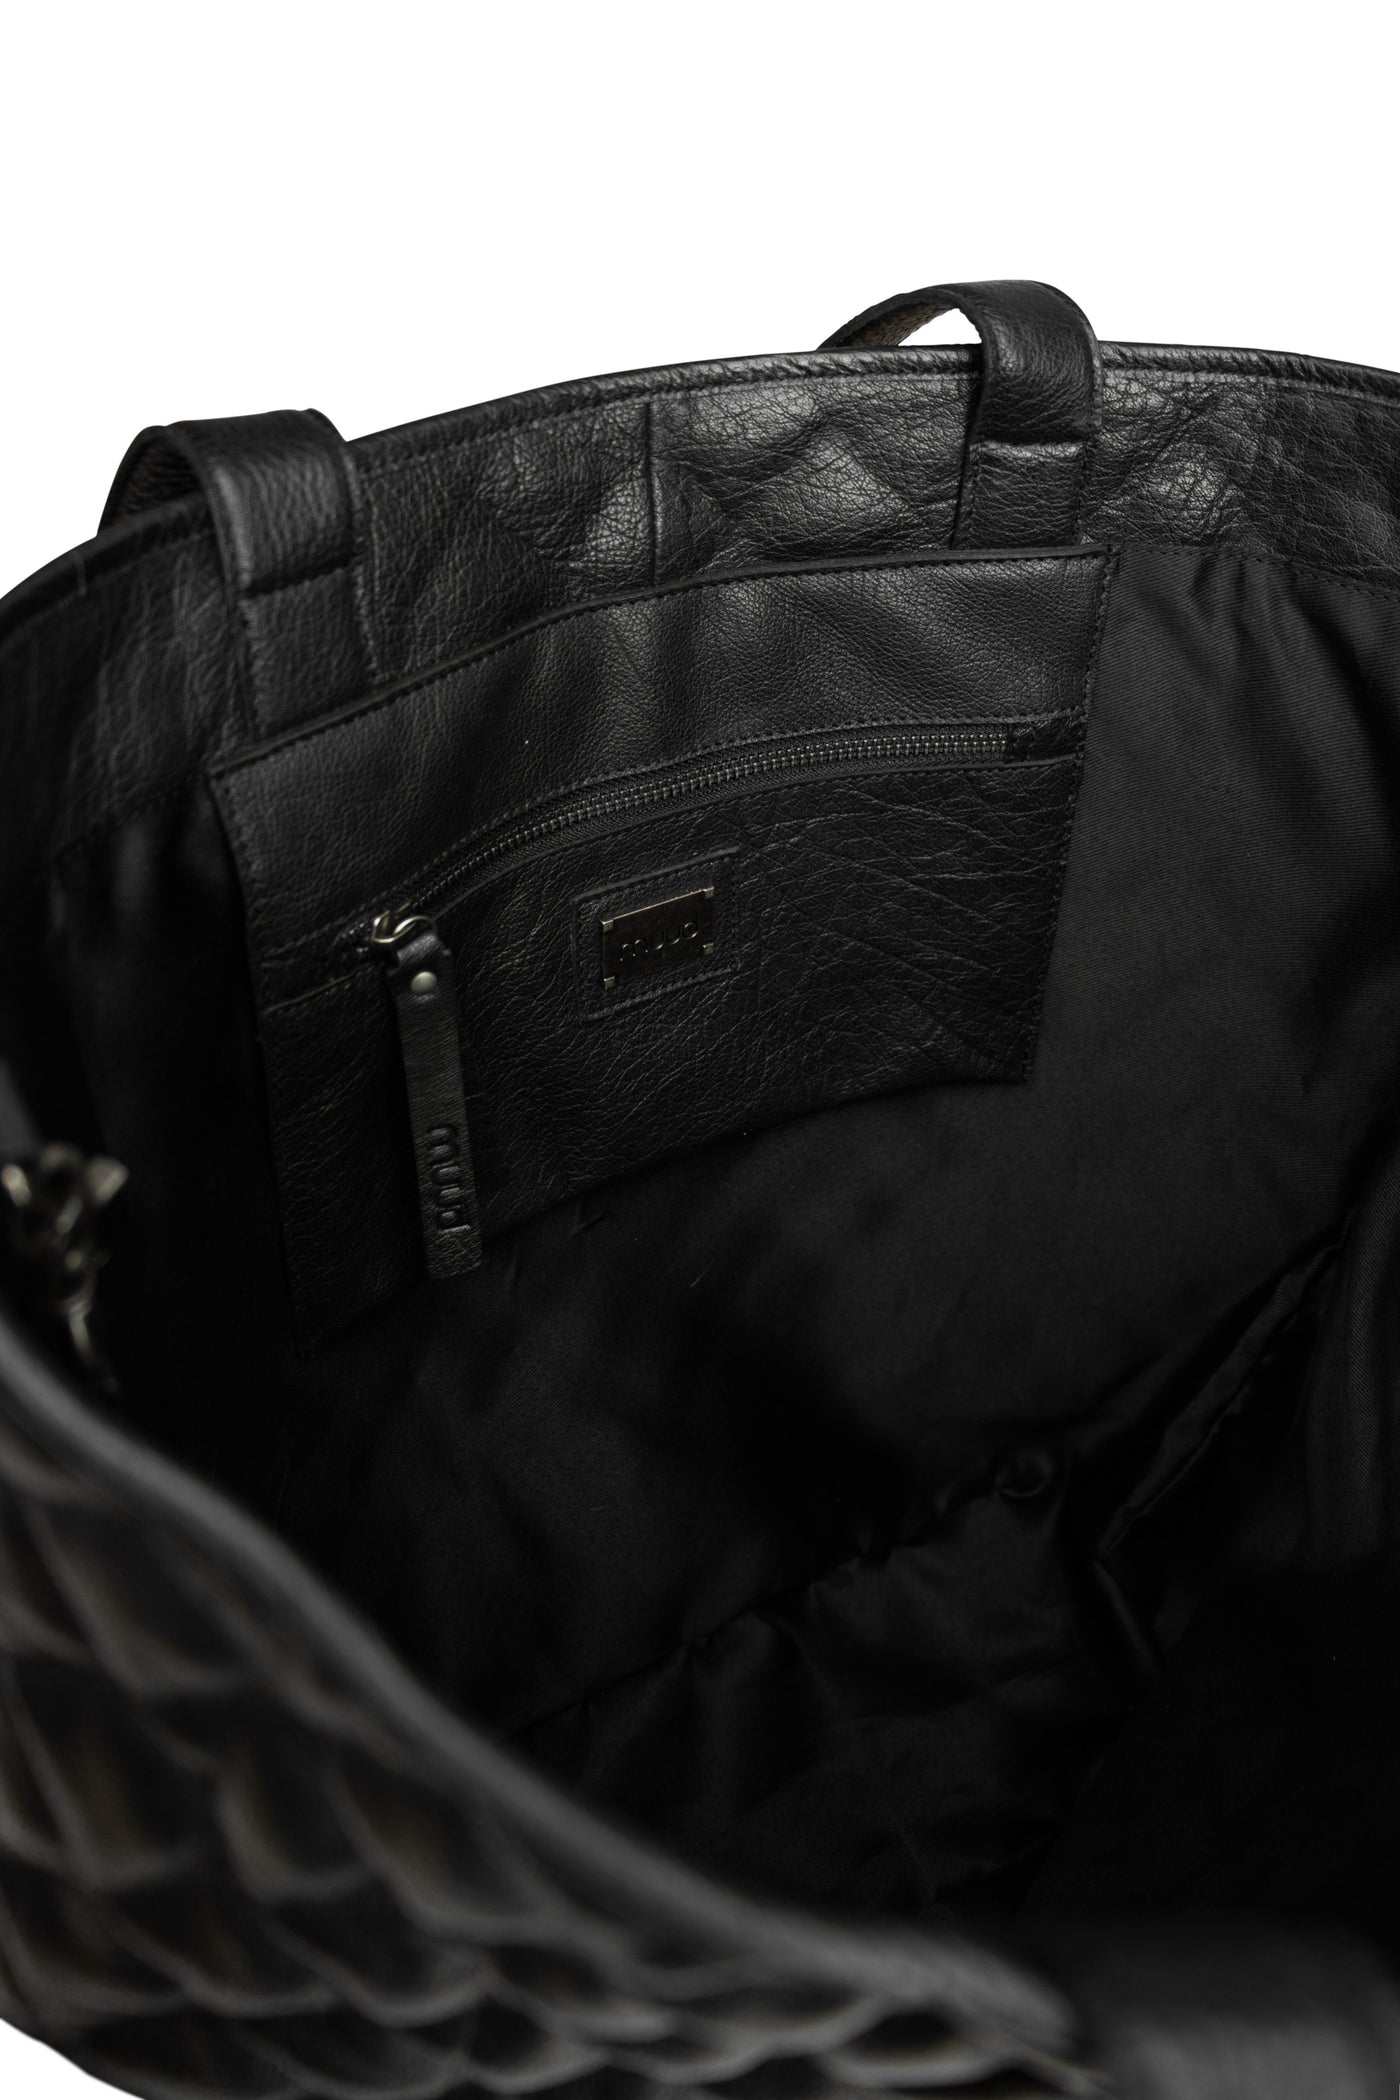 XL Ballistic Nylon Gear Bag – Rugged Radios